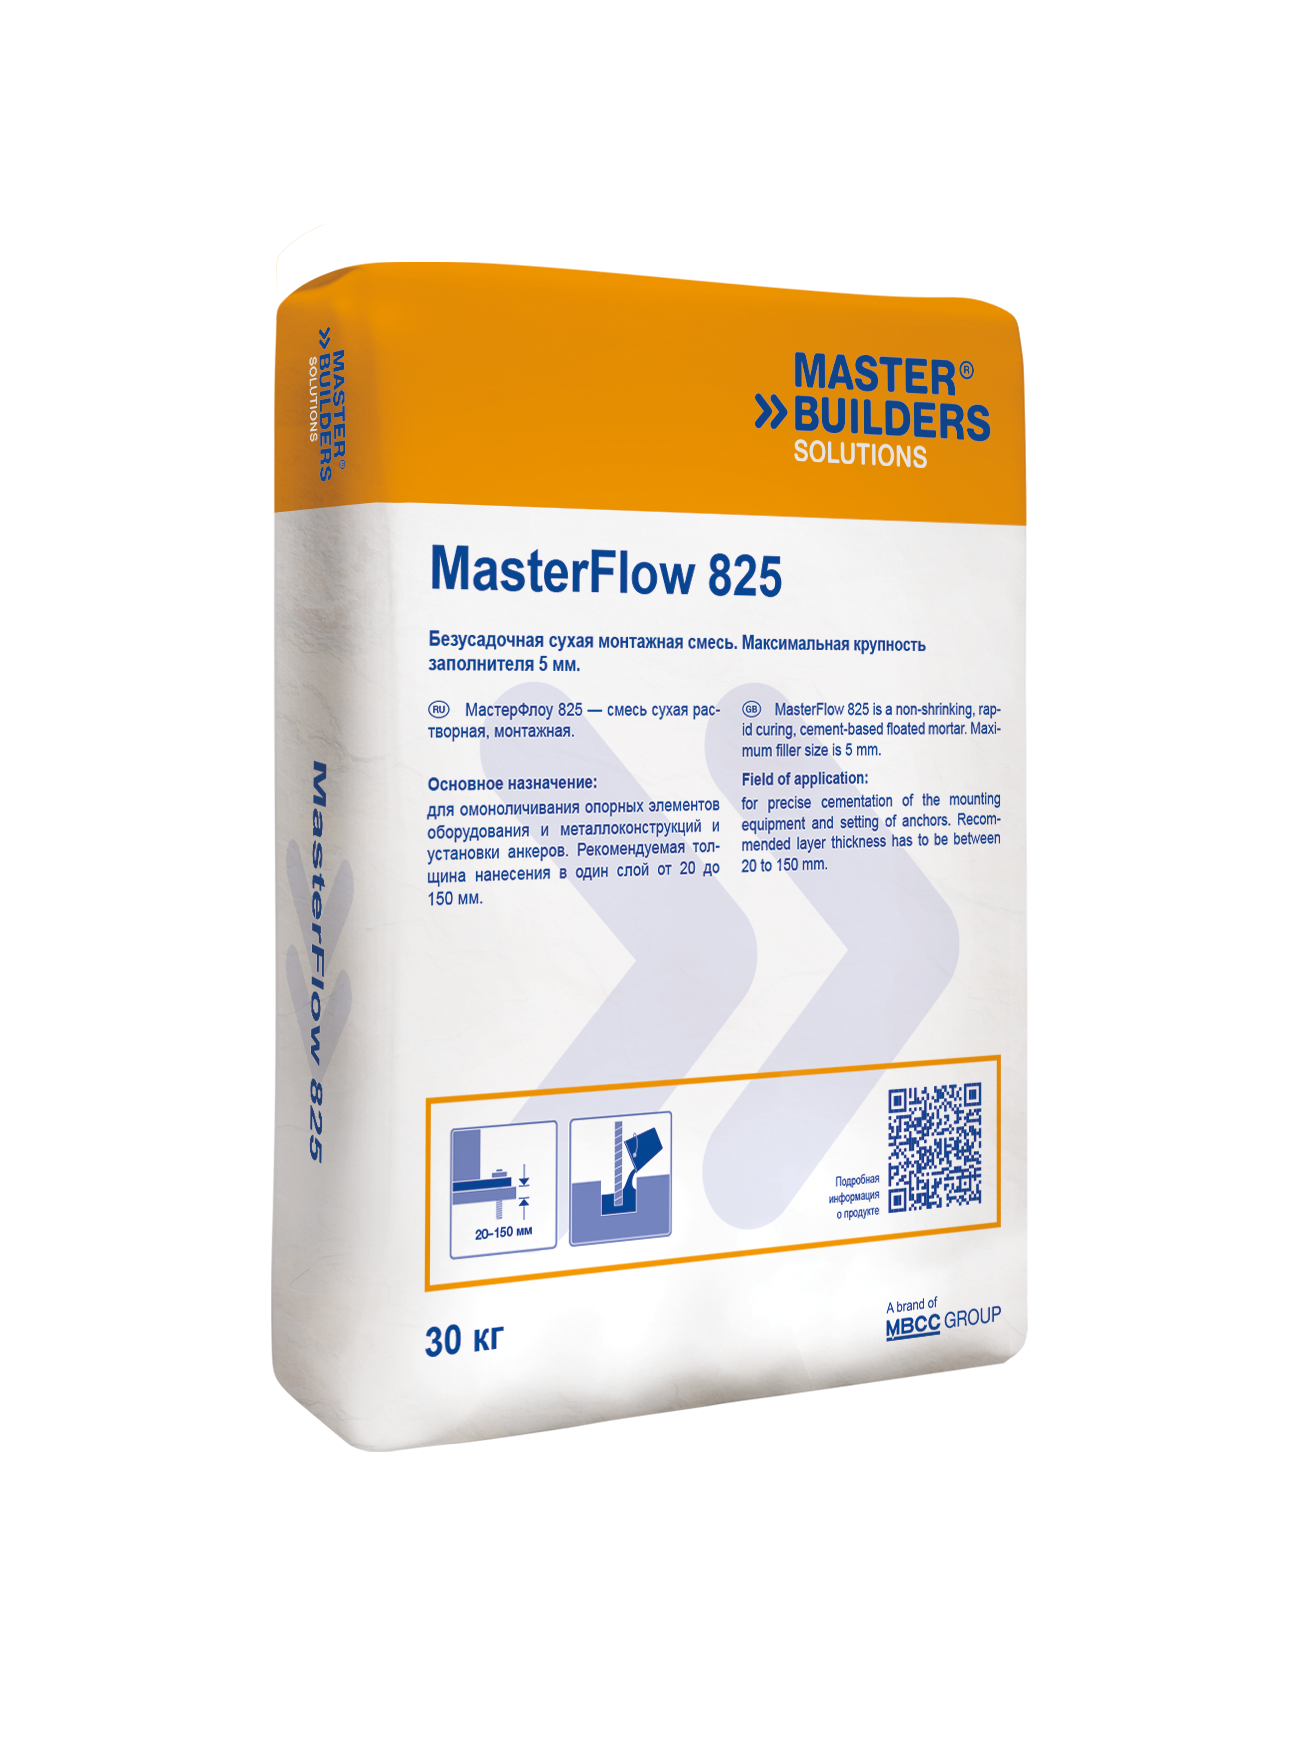 Стяжки и выравнивающие составы MasterFlow 825 - сухая монтажная смесь с компенсированной усадкой copy